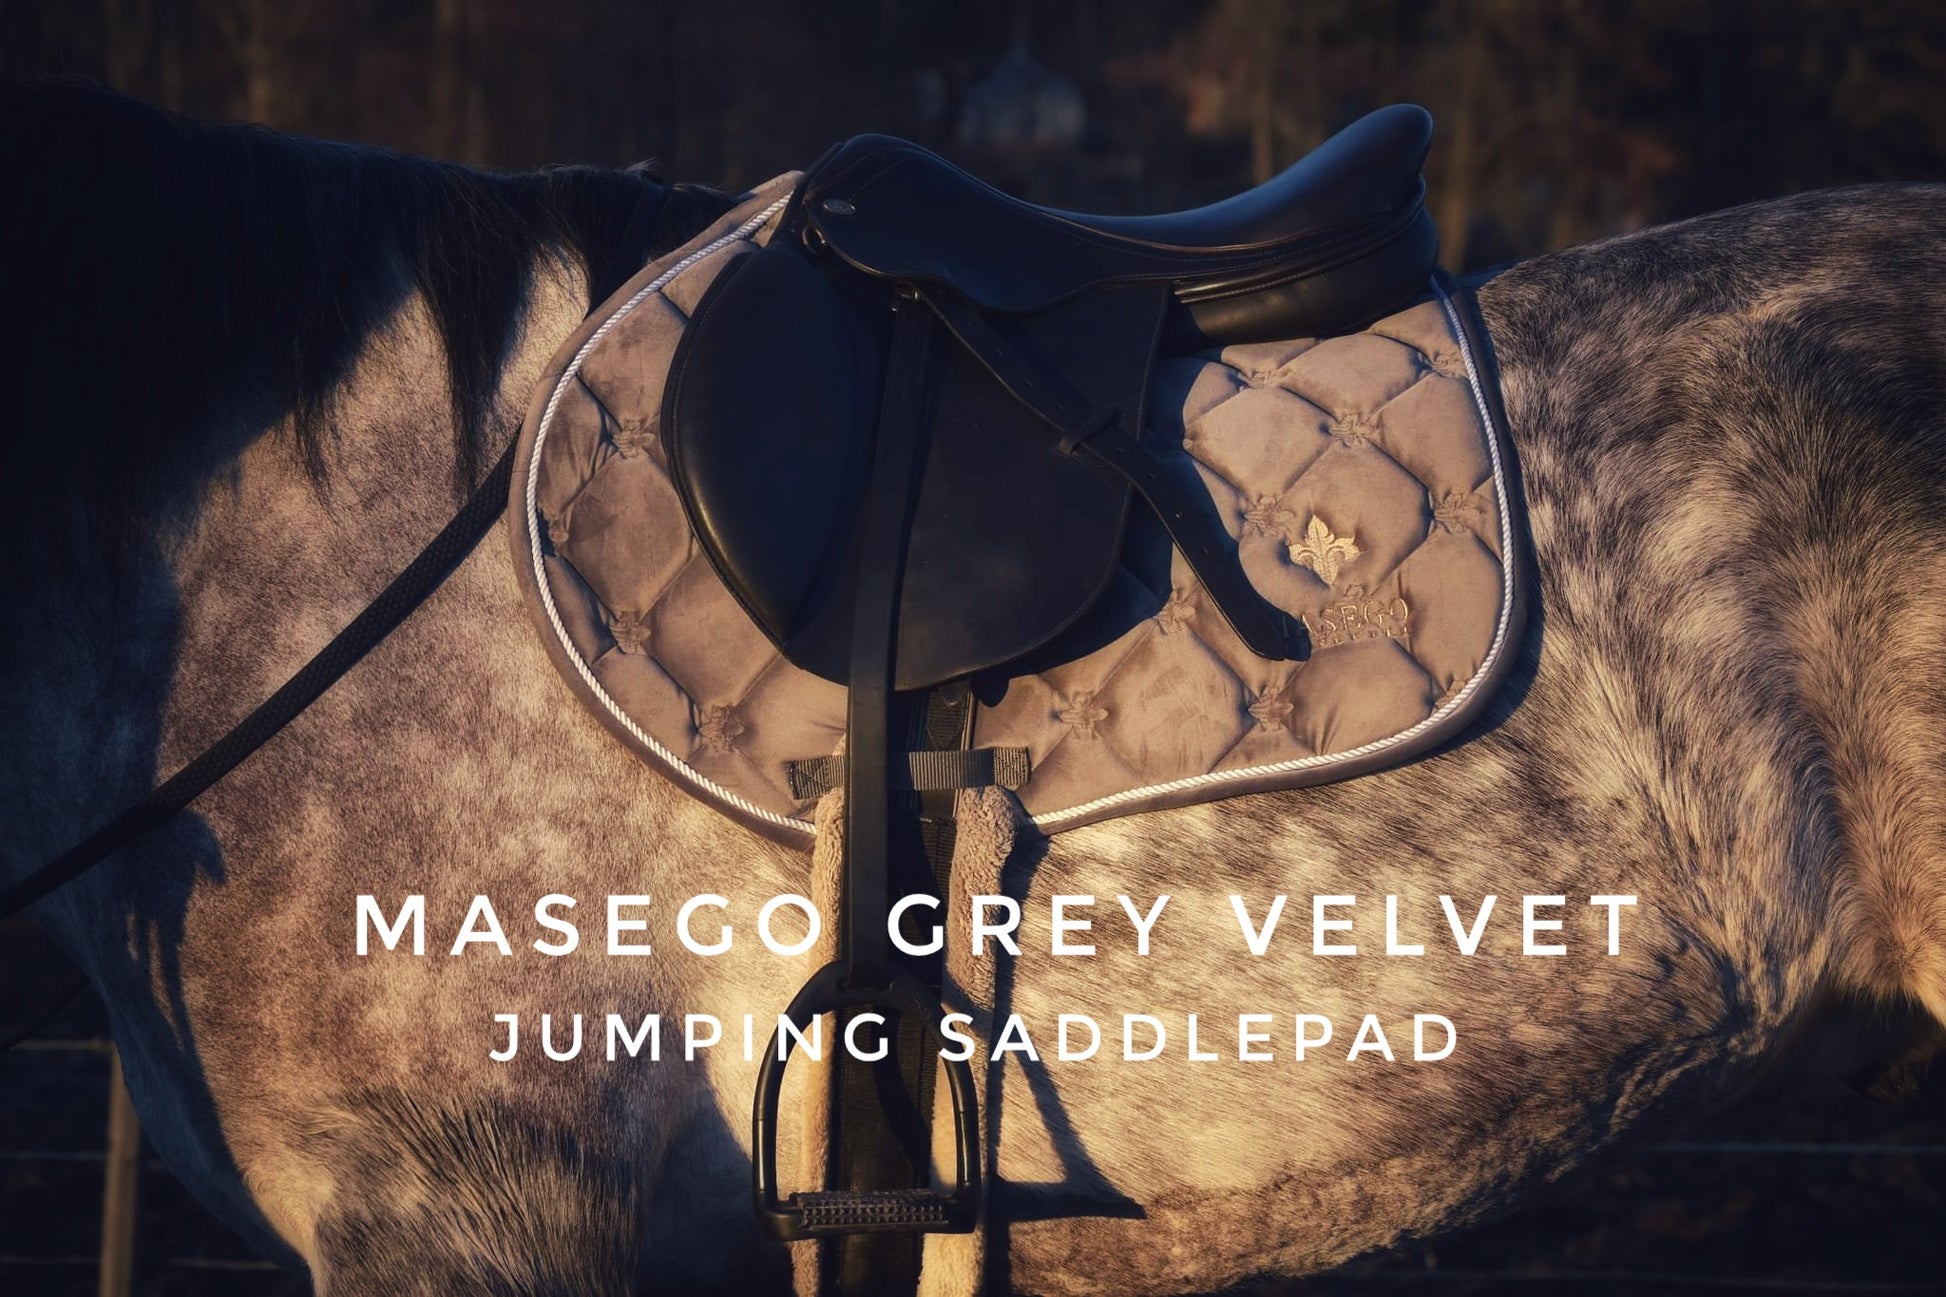 Masego grey velvet jumping saddle pad - MASEGO horsewear